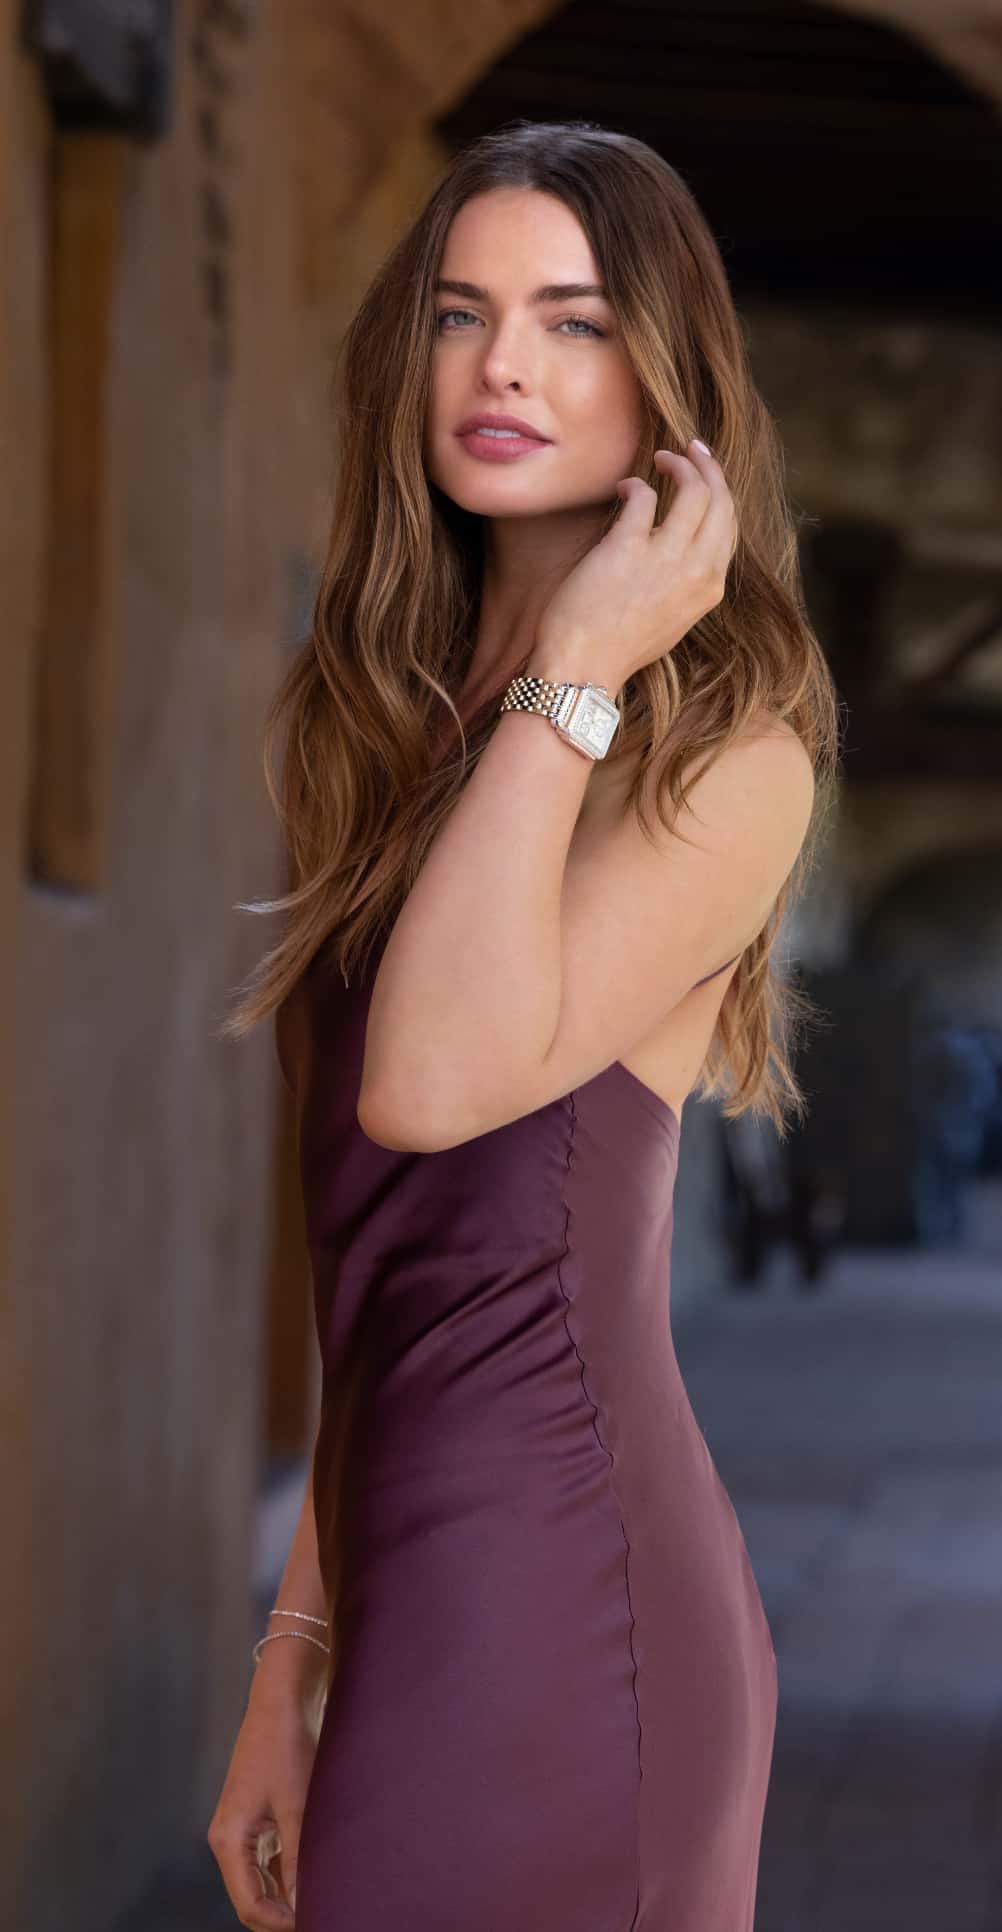 Fashionable woman wearing a Michele watch.